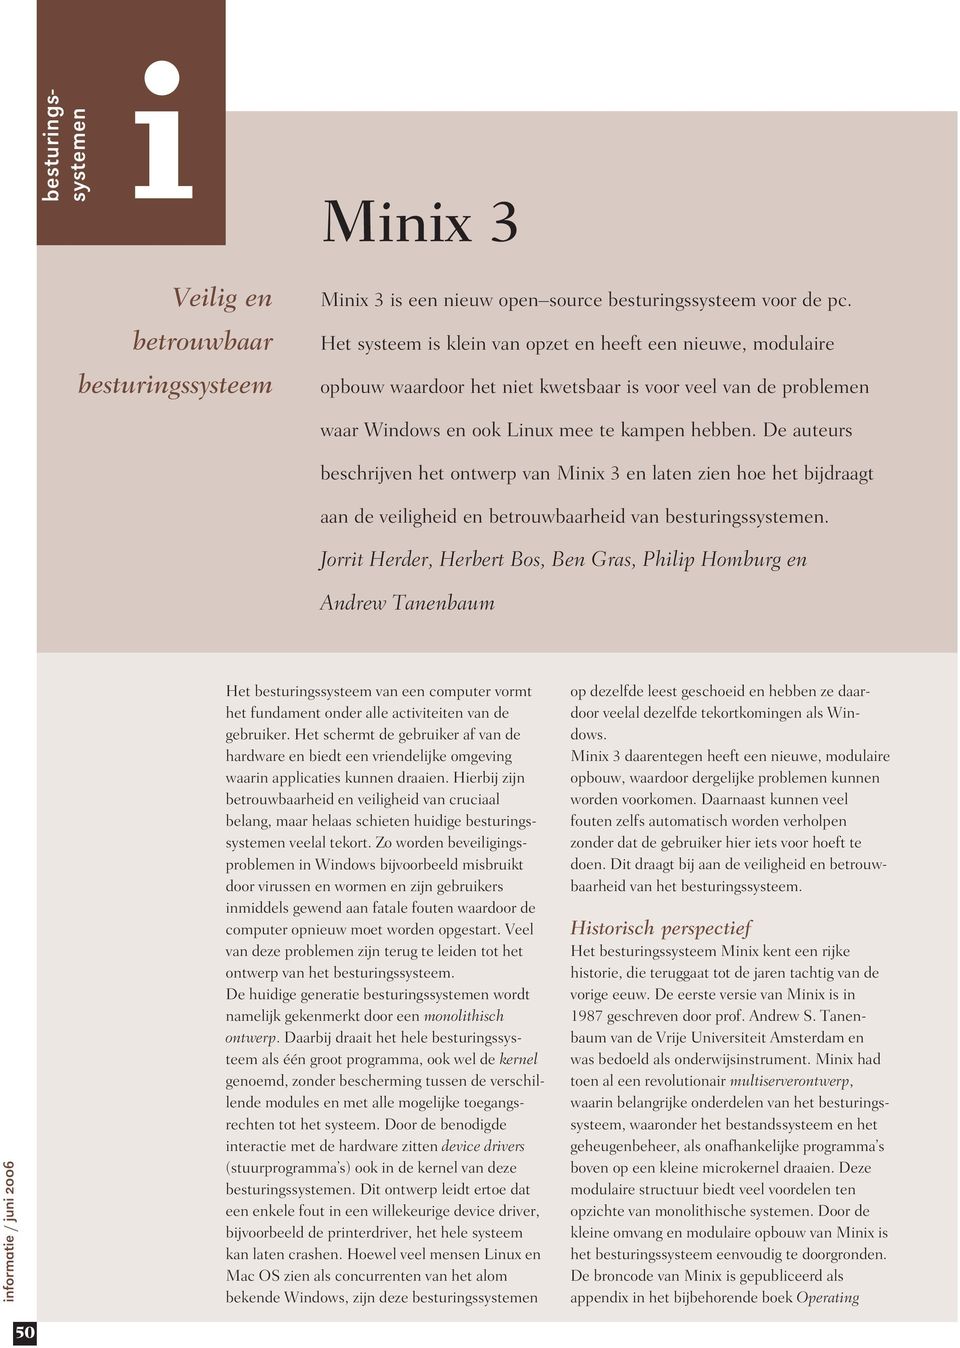 De auteurs beschrjven het ontwerp van Mnx 3 en laten zen hoe het bjdraagt aan de velghed en betrouwbaarhed van besturngssystemen.